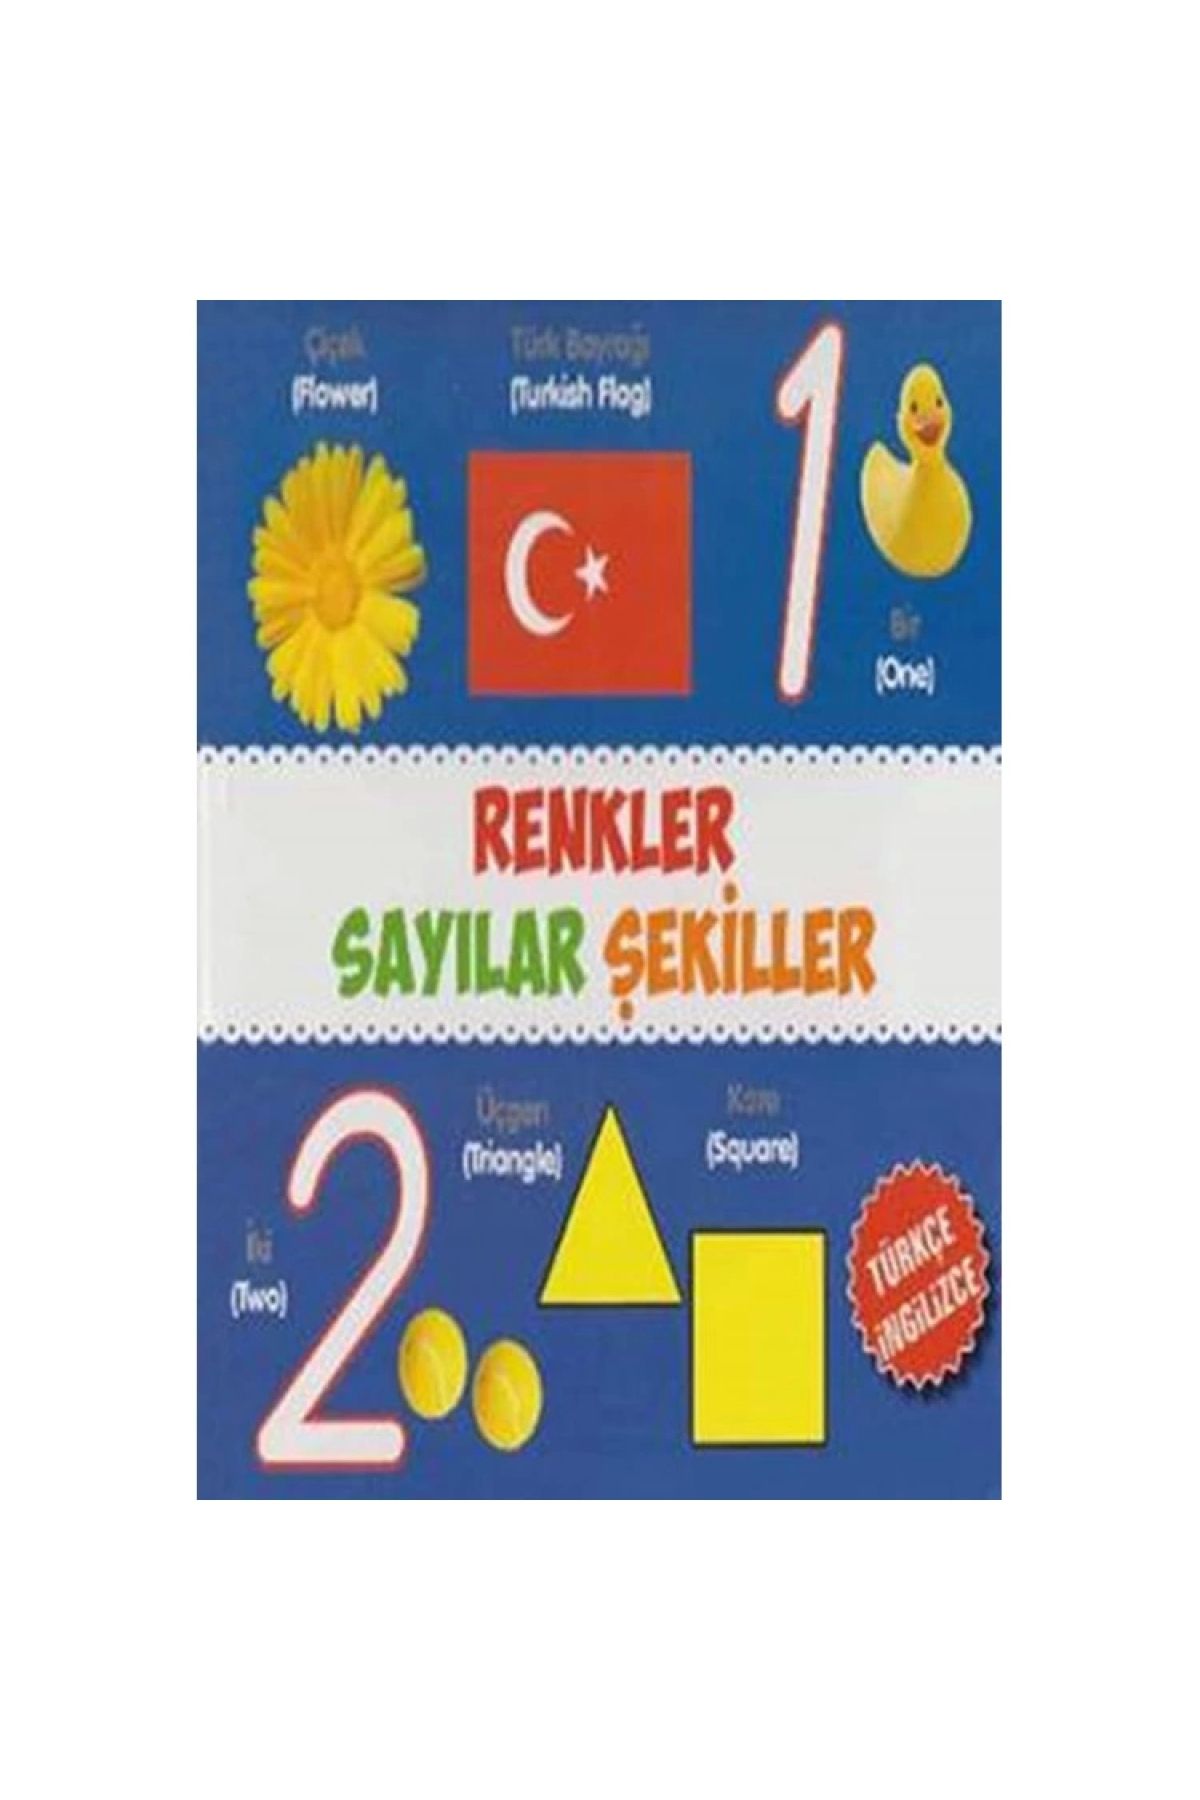 Parıltı Yayıncılık Renkler Sayılar Şekiller (türkçe-ingilizce)